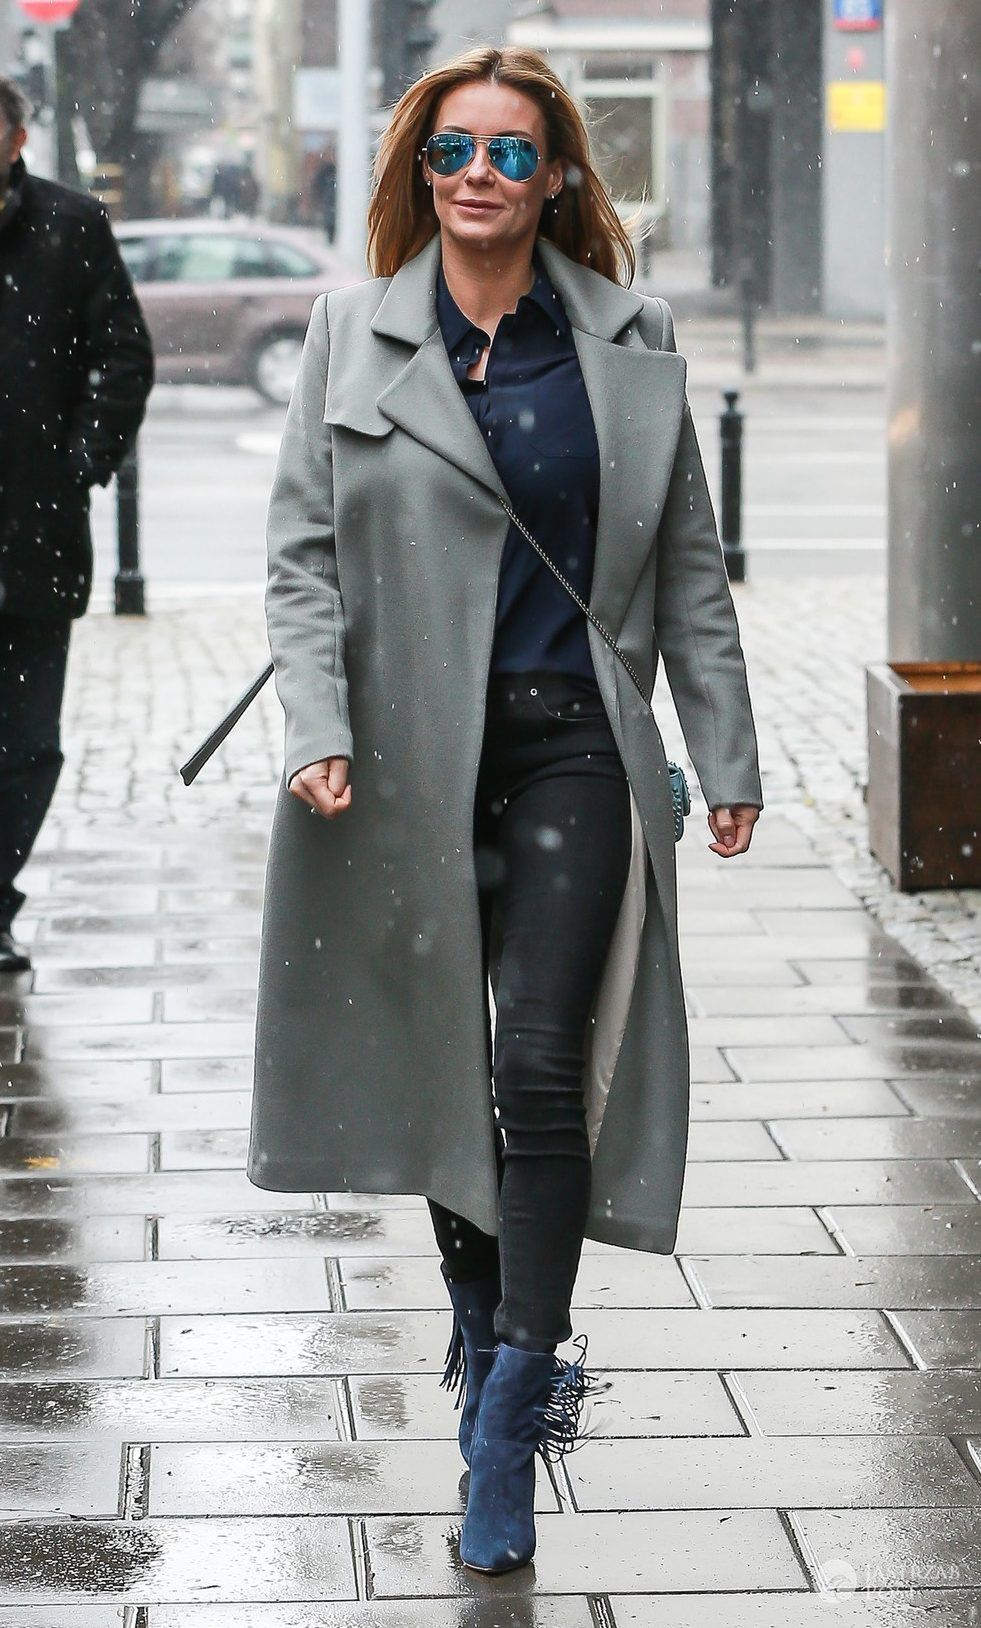 Małgorzata Rozenek w szarym płaszczu pod studiem "Dzień dobry TVN" (fot. East News)